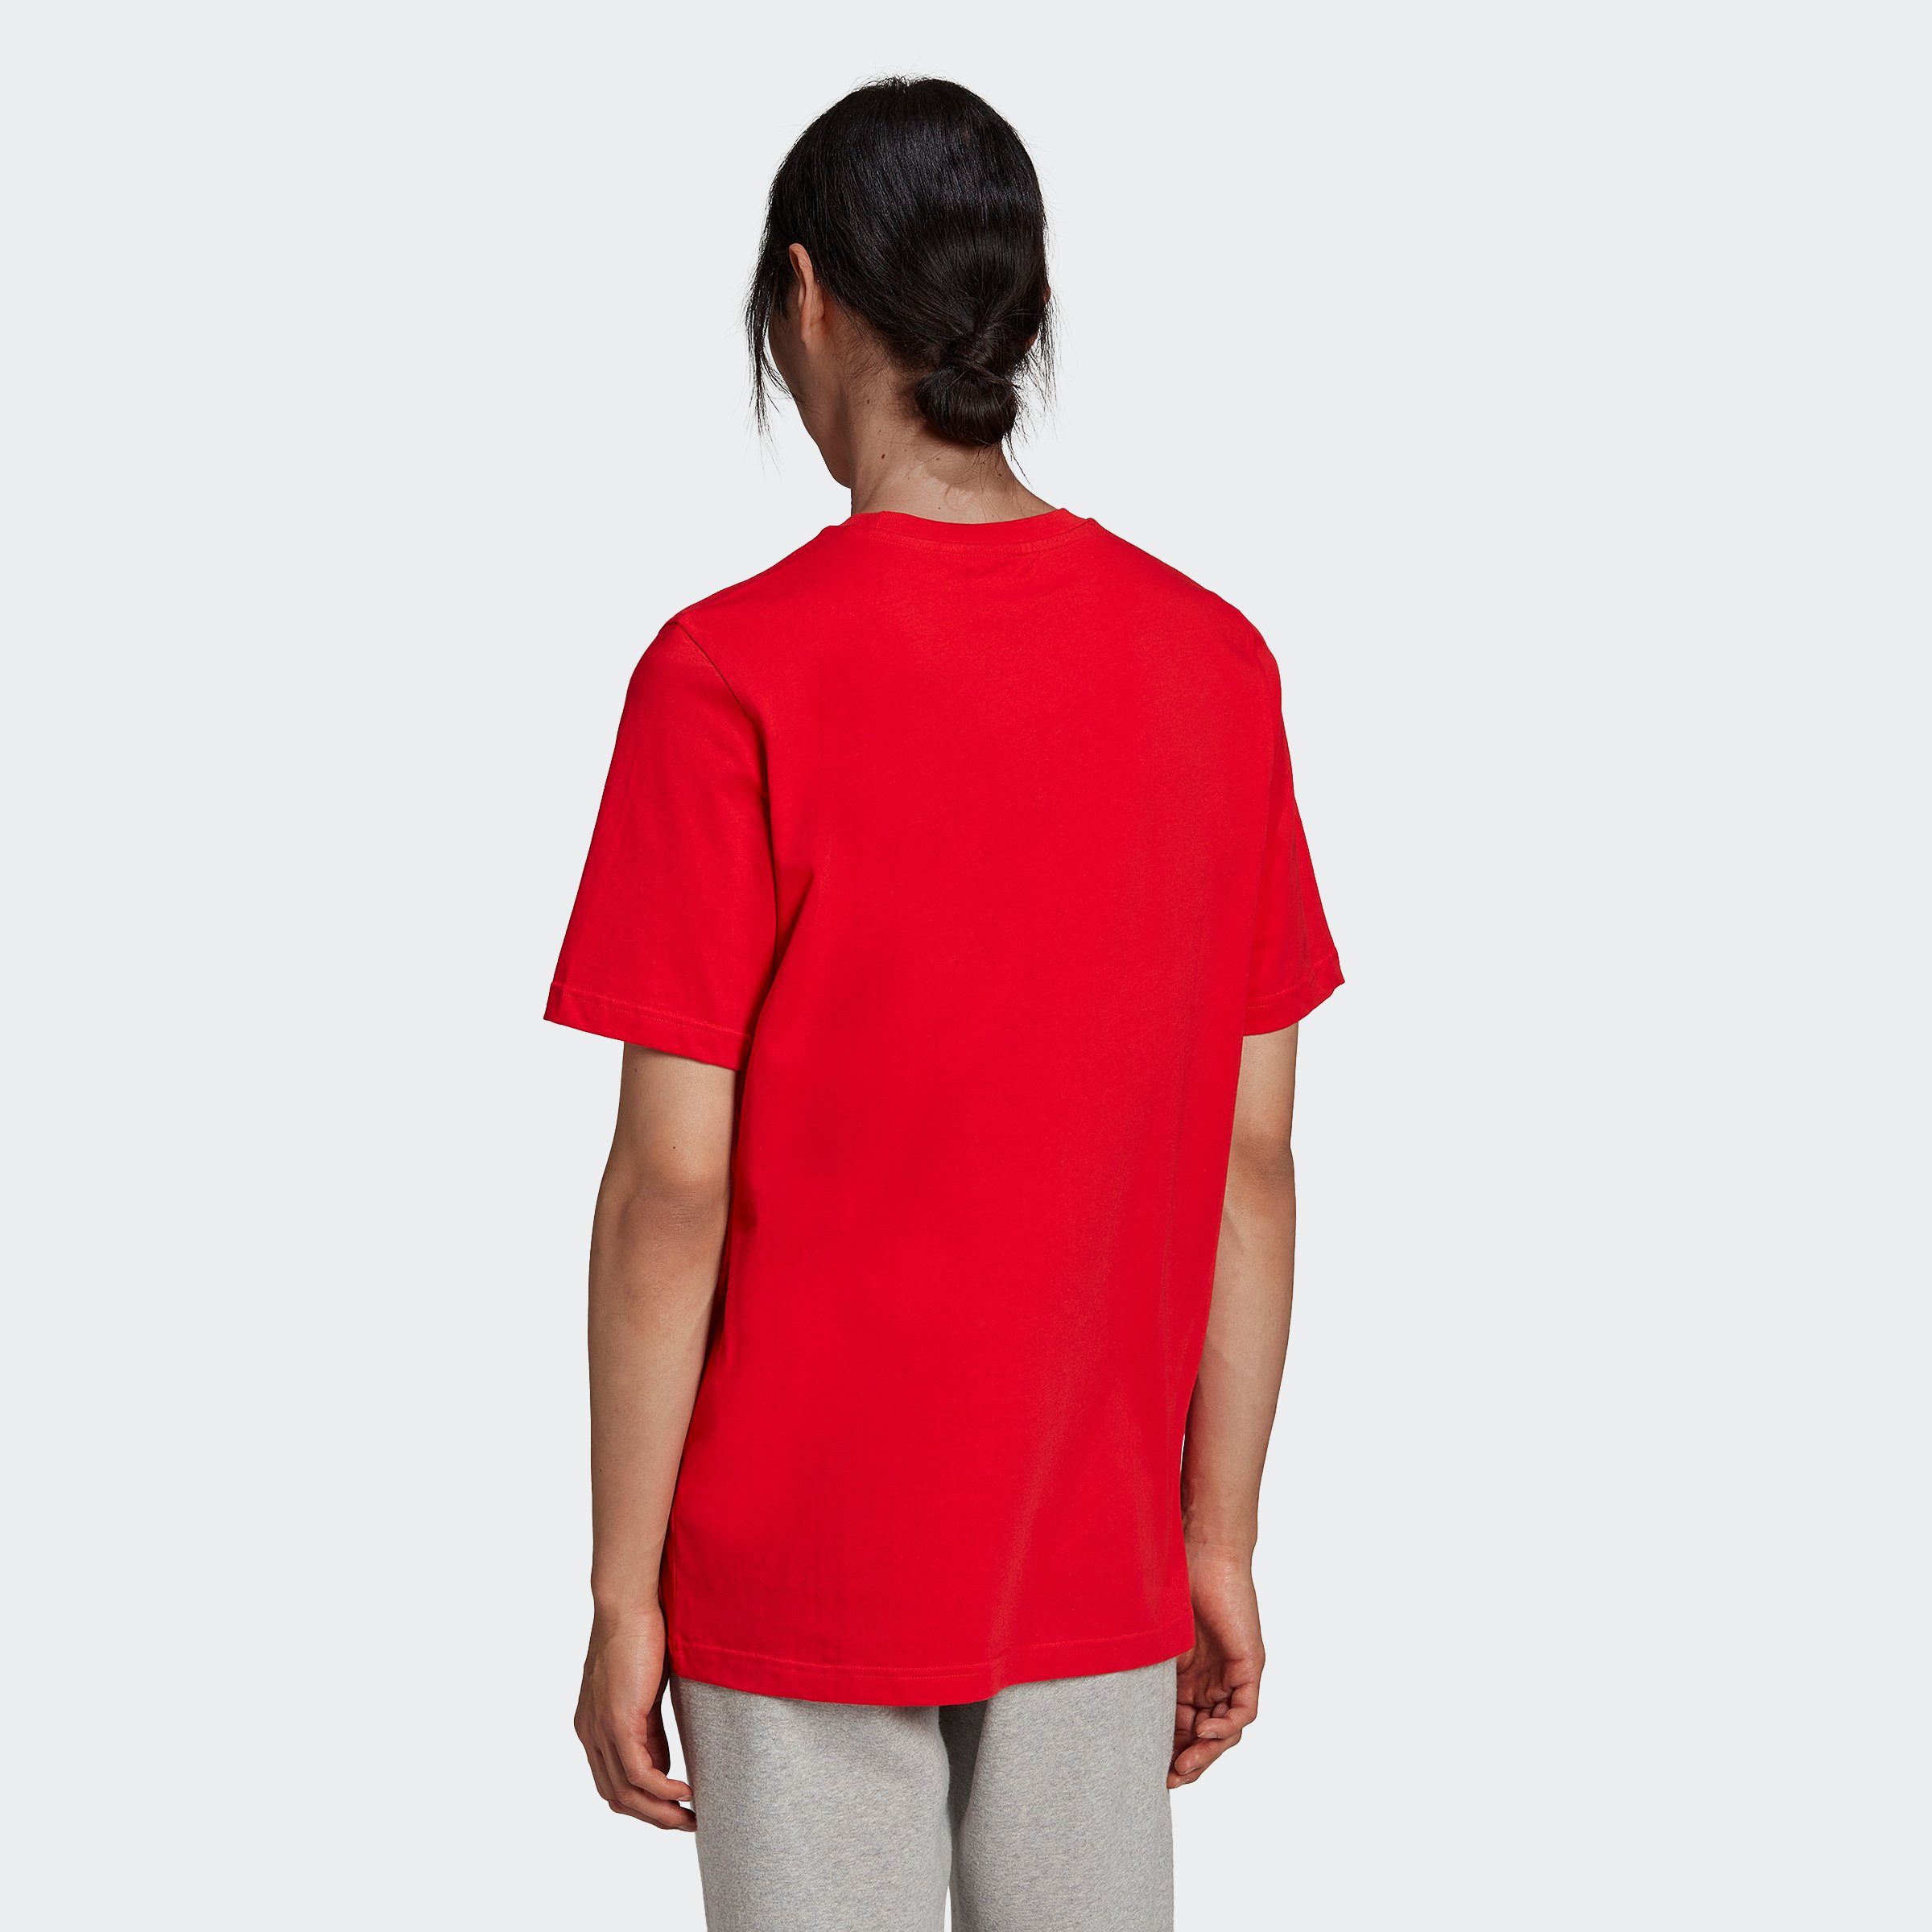 TREFOIL ADICOLOR T-Shirt adidas CLASSICS Originals VIVRED/WHITE